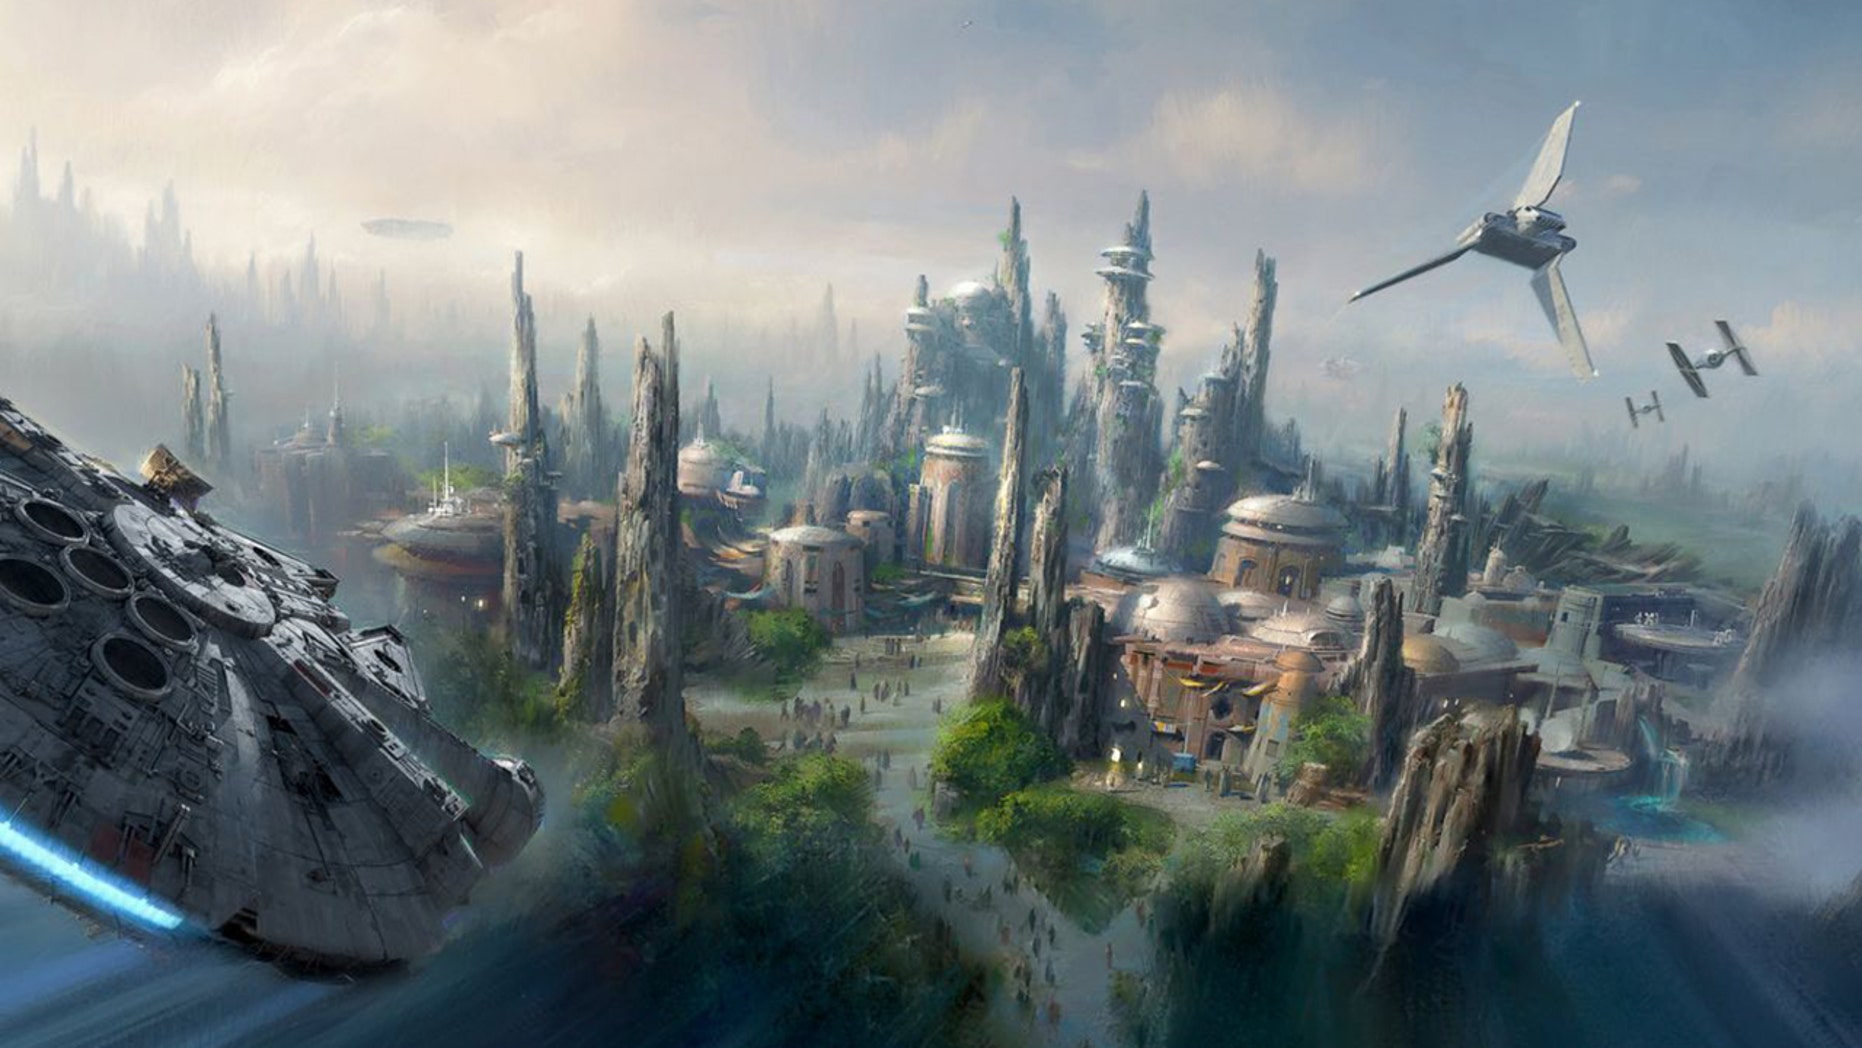 Disneyland’s new ‘Star Wars’ Ride may be 28 minutes long